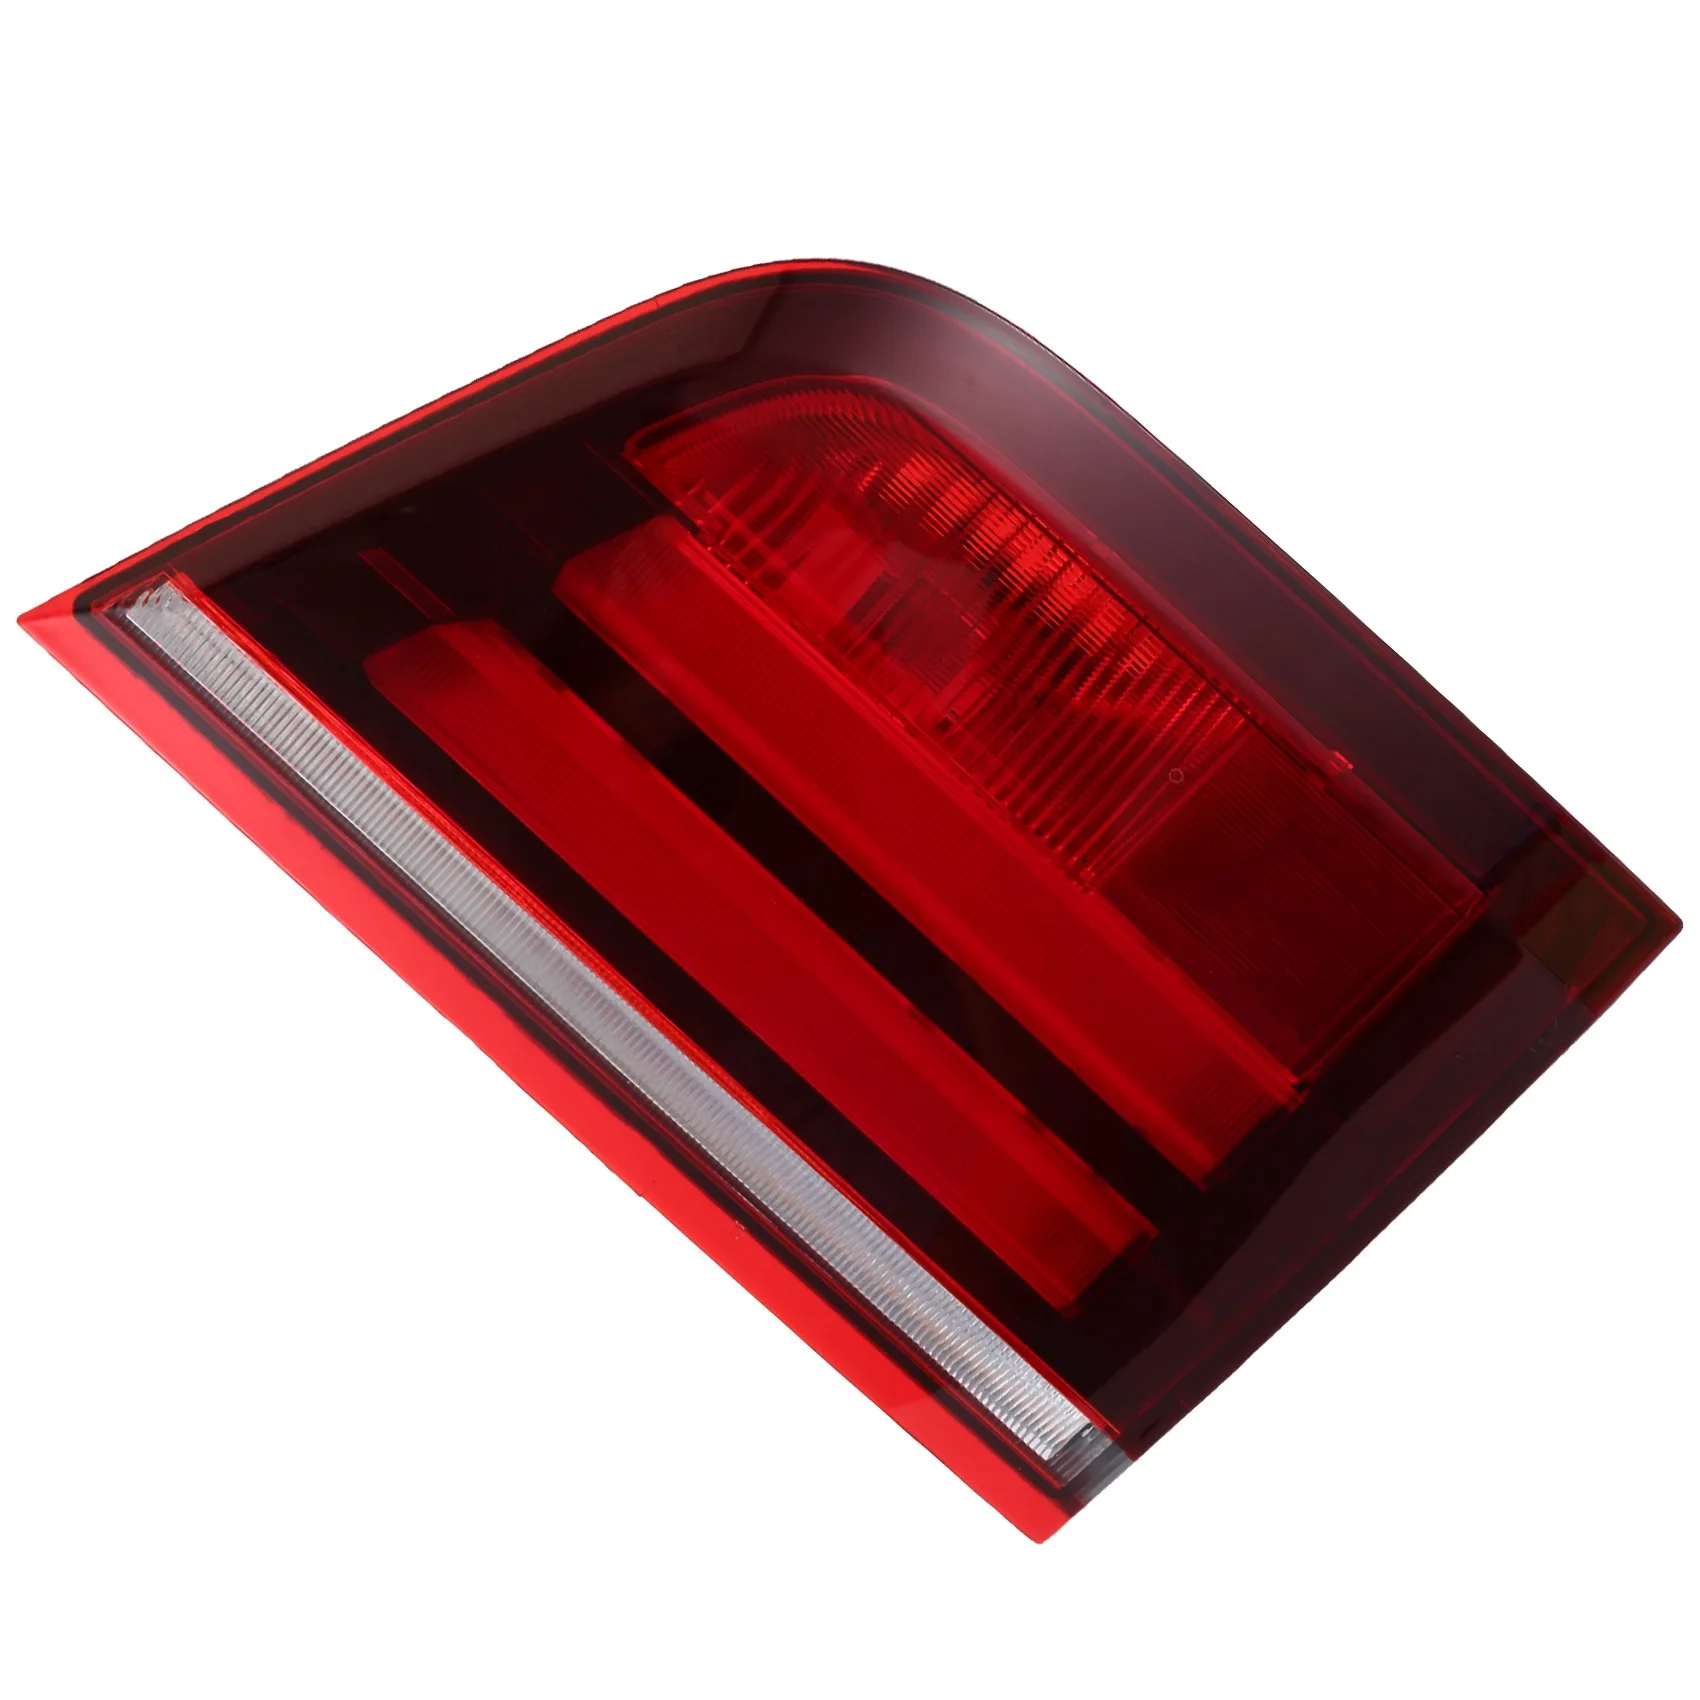 אחורי לרכב האות מנורת אזהרה בלם רפלקטור פנימי זנב אור-ב. מ. וו X5 E70 3.0 D 3.0 Sd 3.0 סי 3.5 D 4.8 2011-2013 - 2